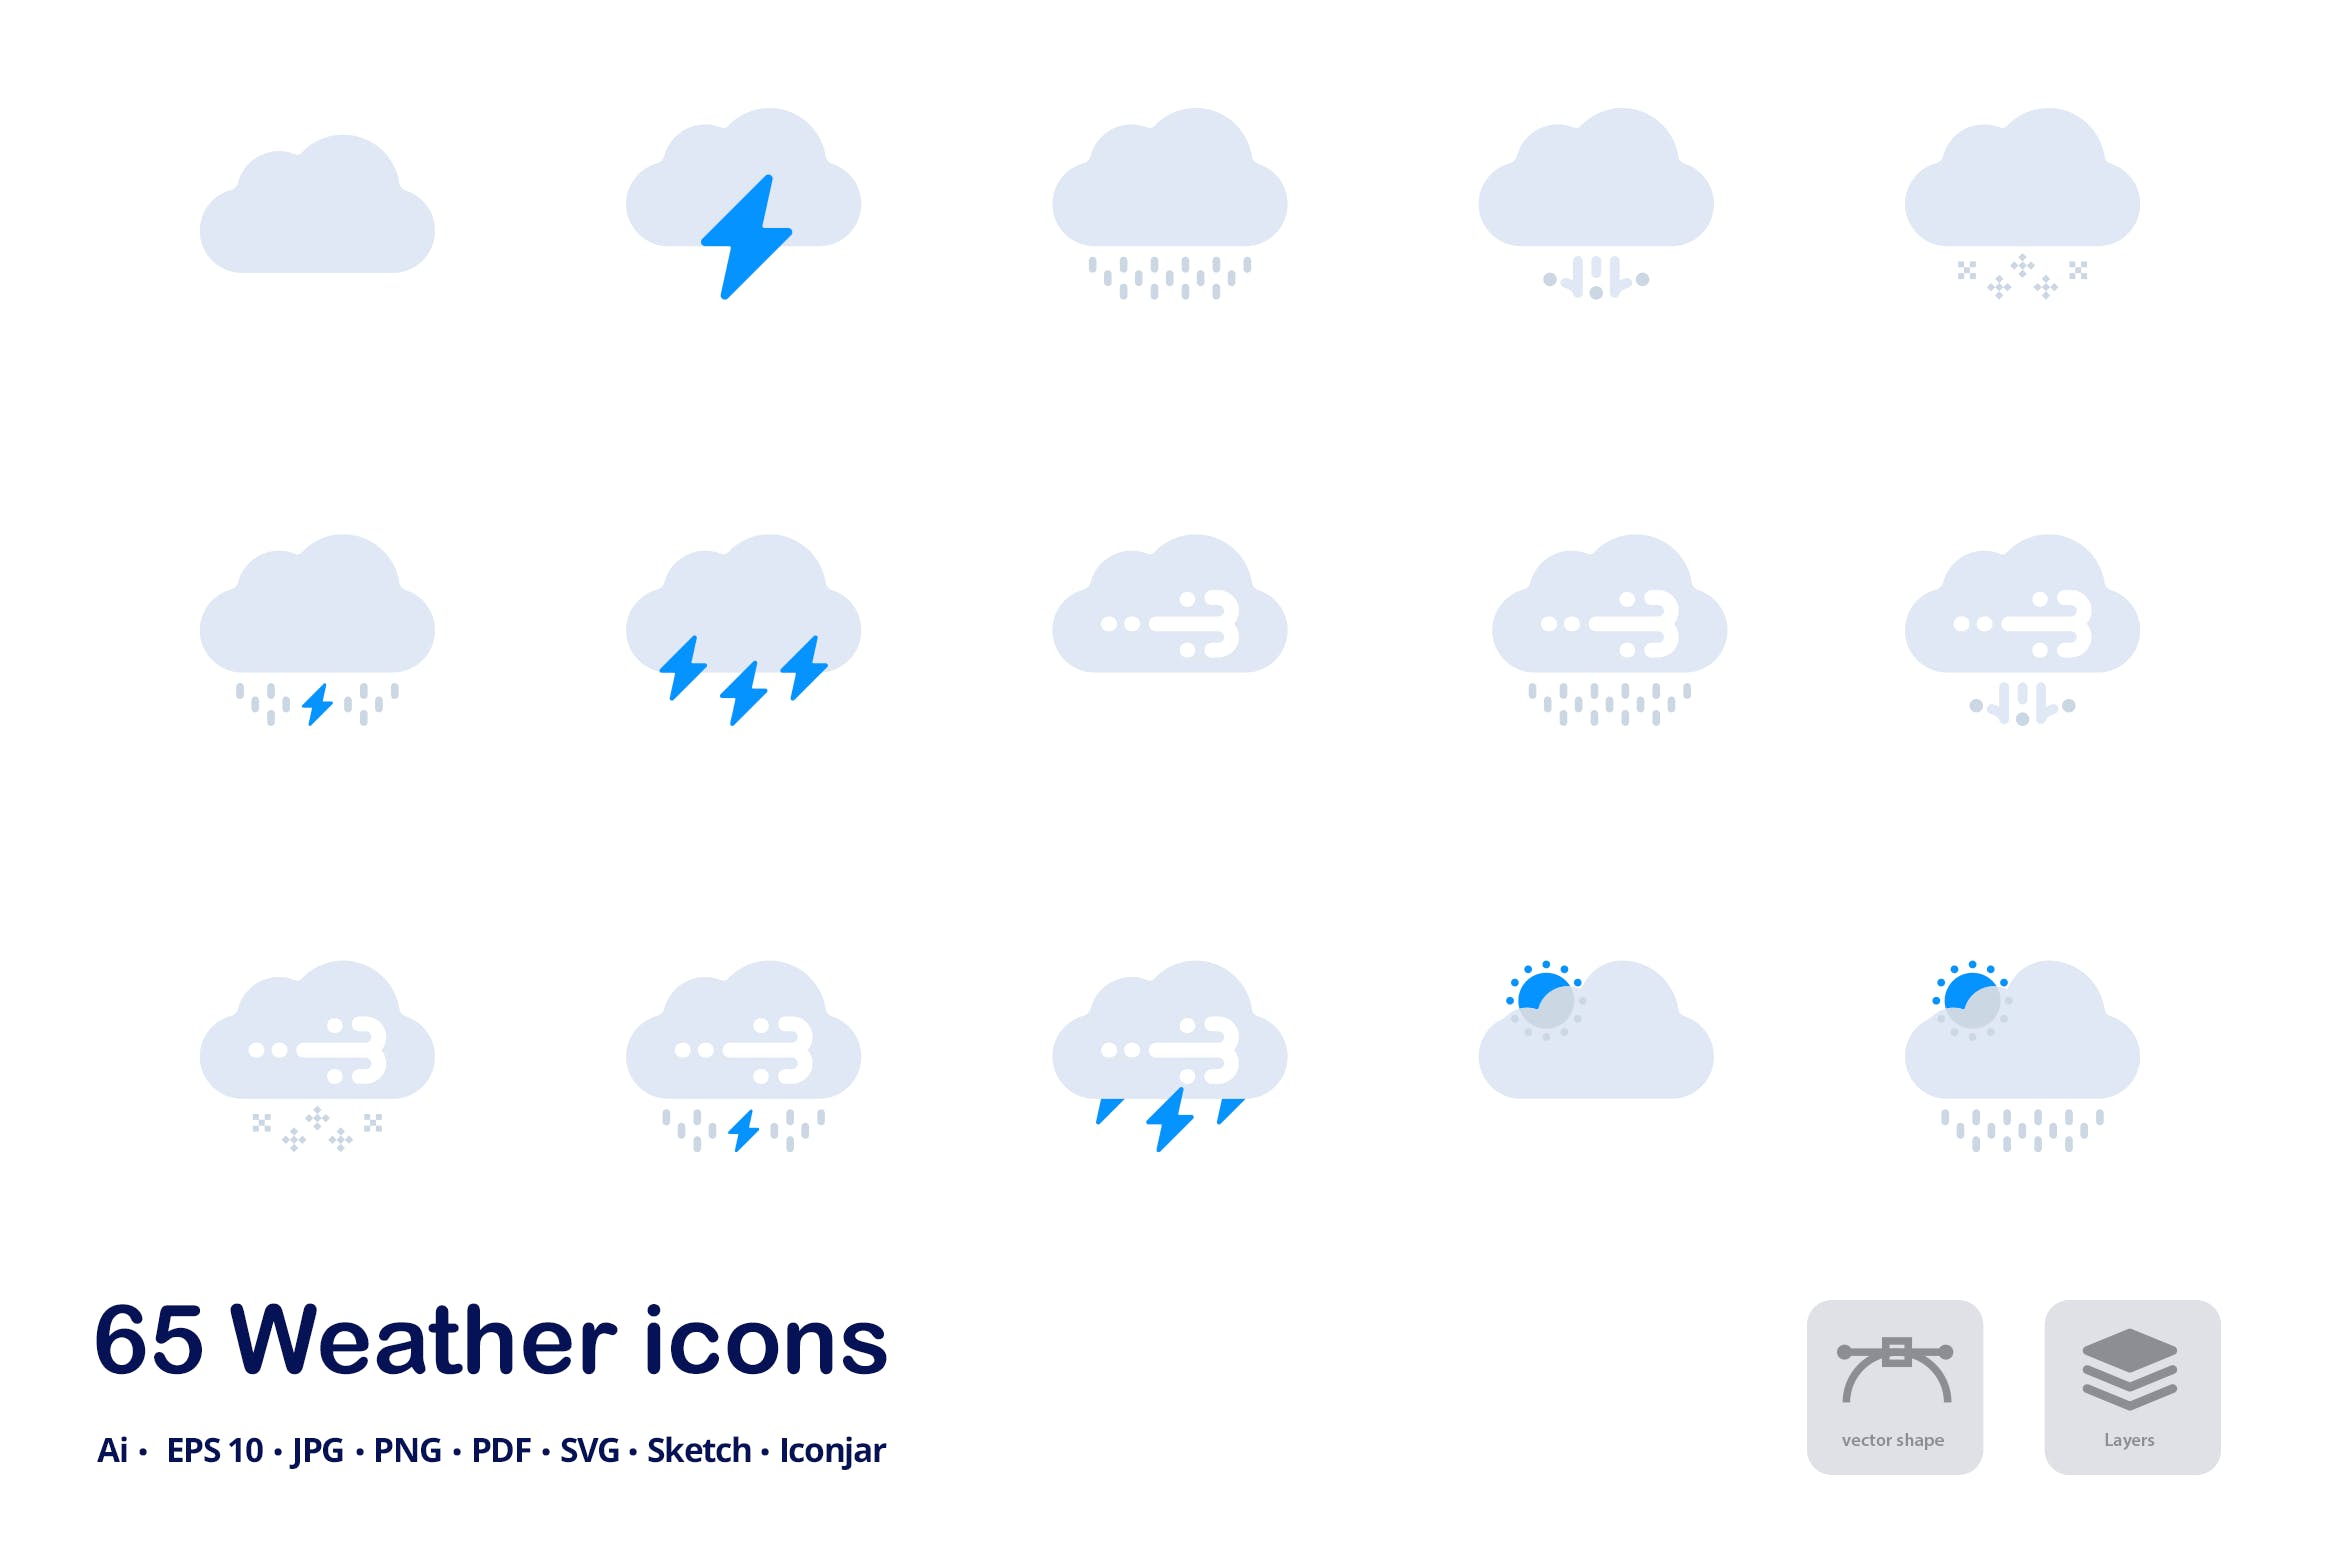 天气预报双色调扁平化矢量图标 Weather Forecast Accent Duo Tone Flat Icons插图